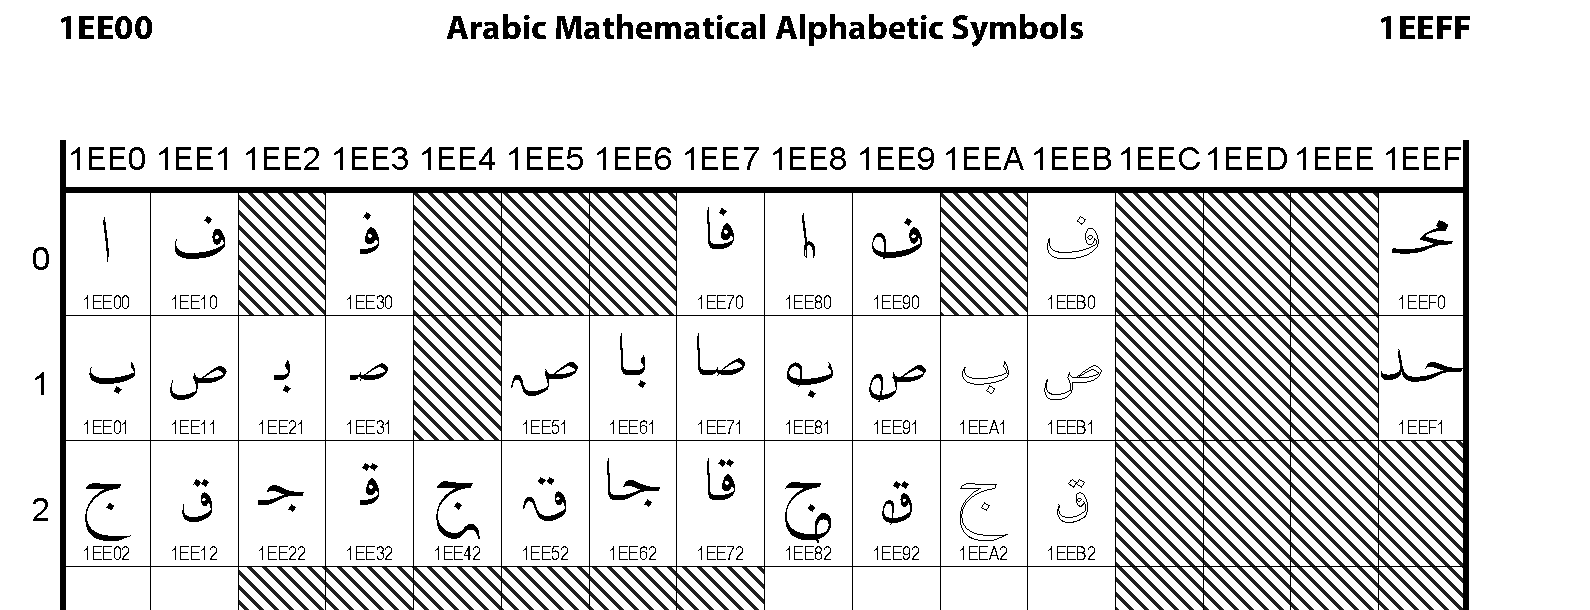 Unicode - Arabic Mathematical Alphabetic Symbols